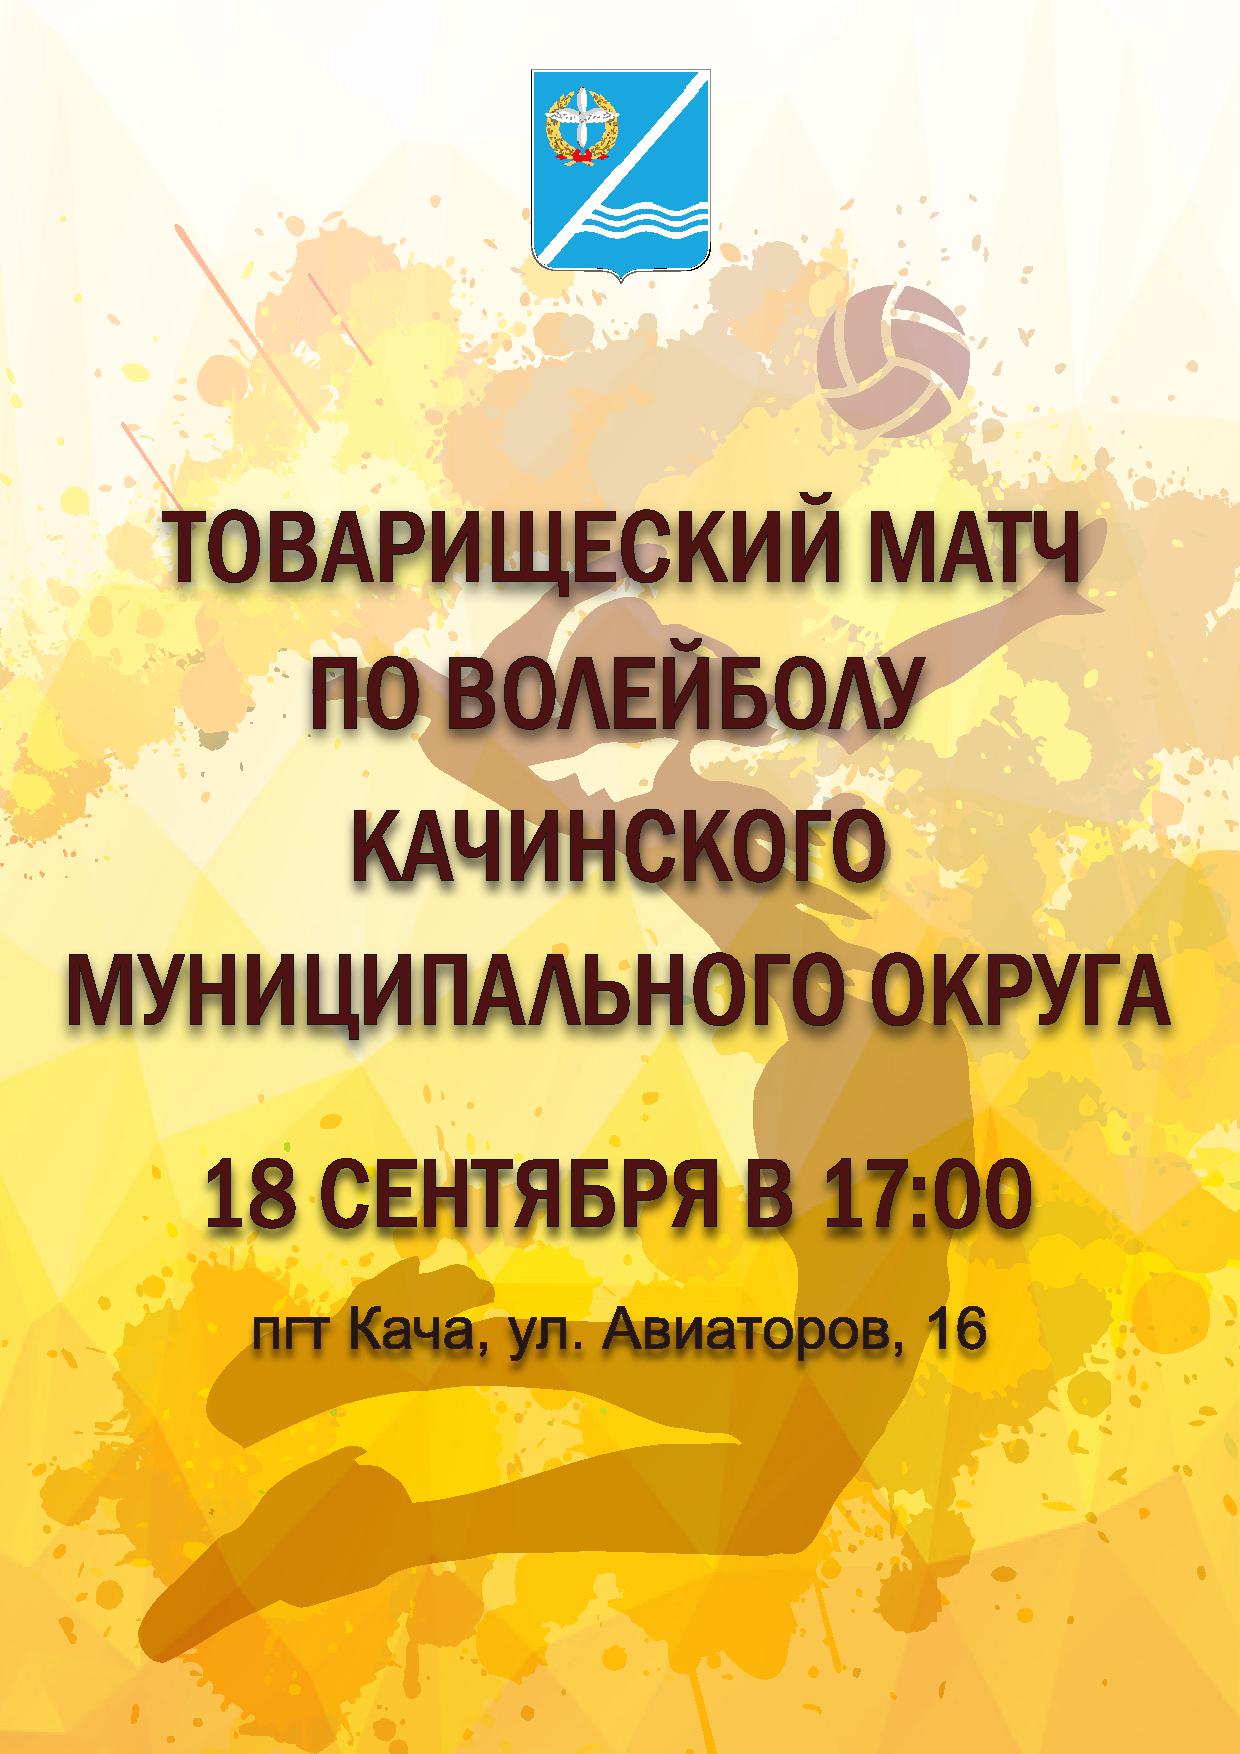 18 sentyabrya sostoitsya tovarisheskij match po volejbolu 